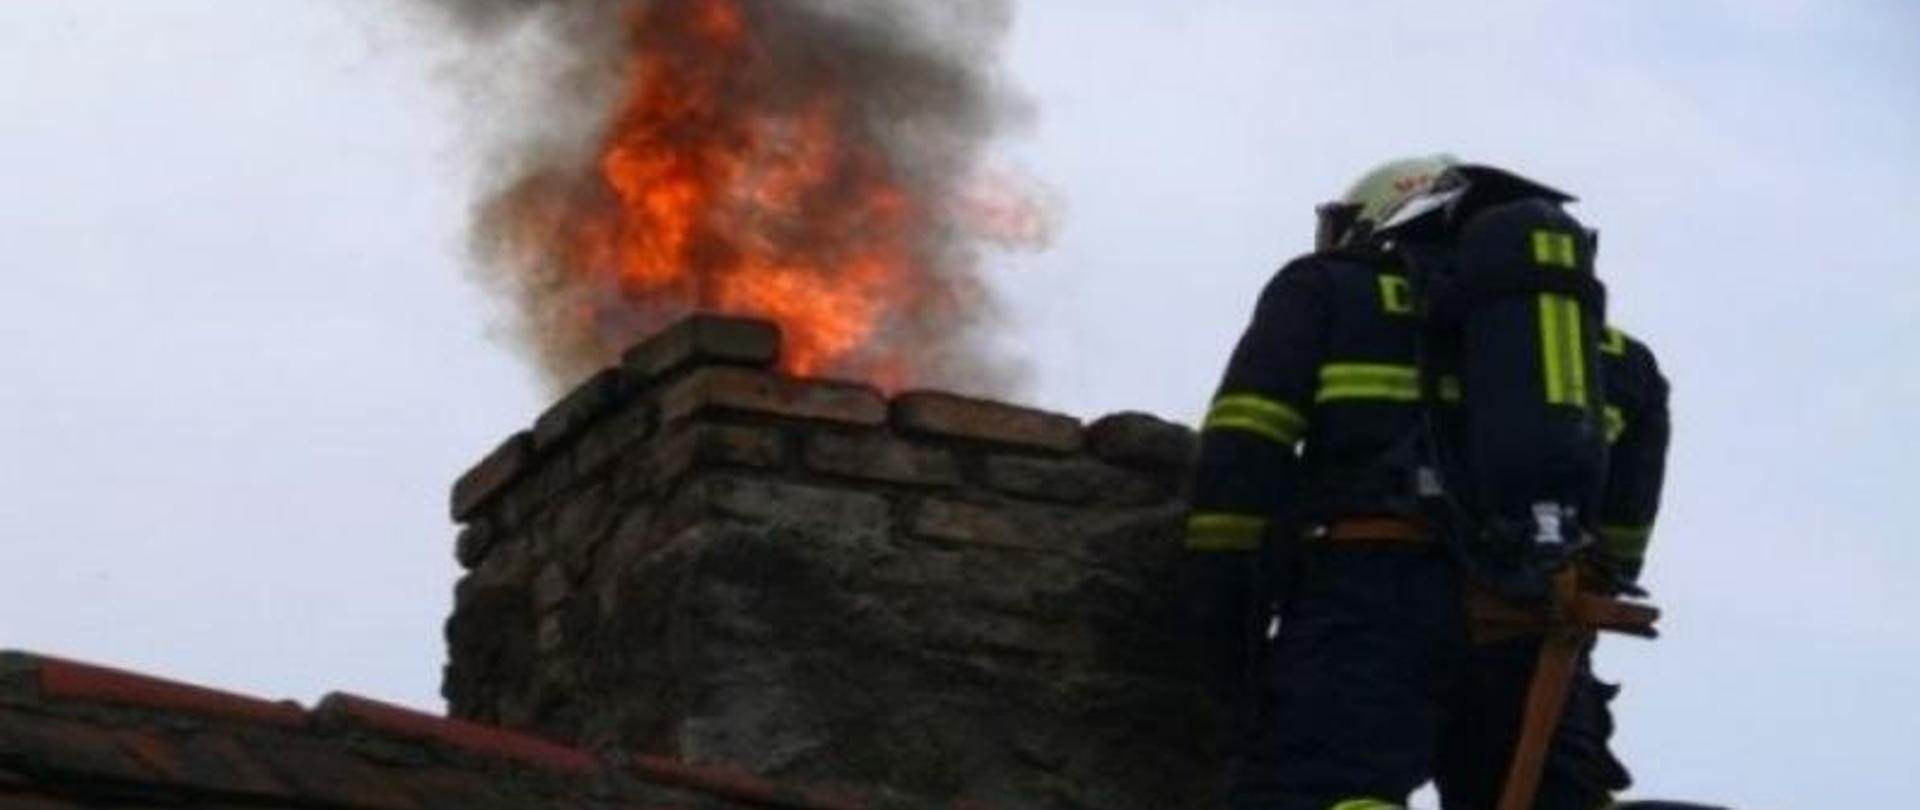 Na zdjęciu widać strażaka przy kominie z którego wydobywają się płomienie i czarny dym